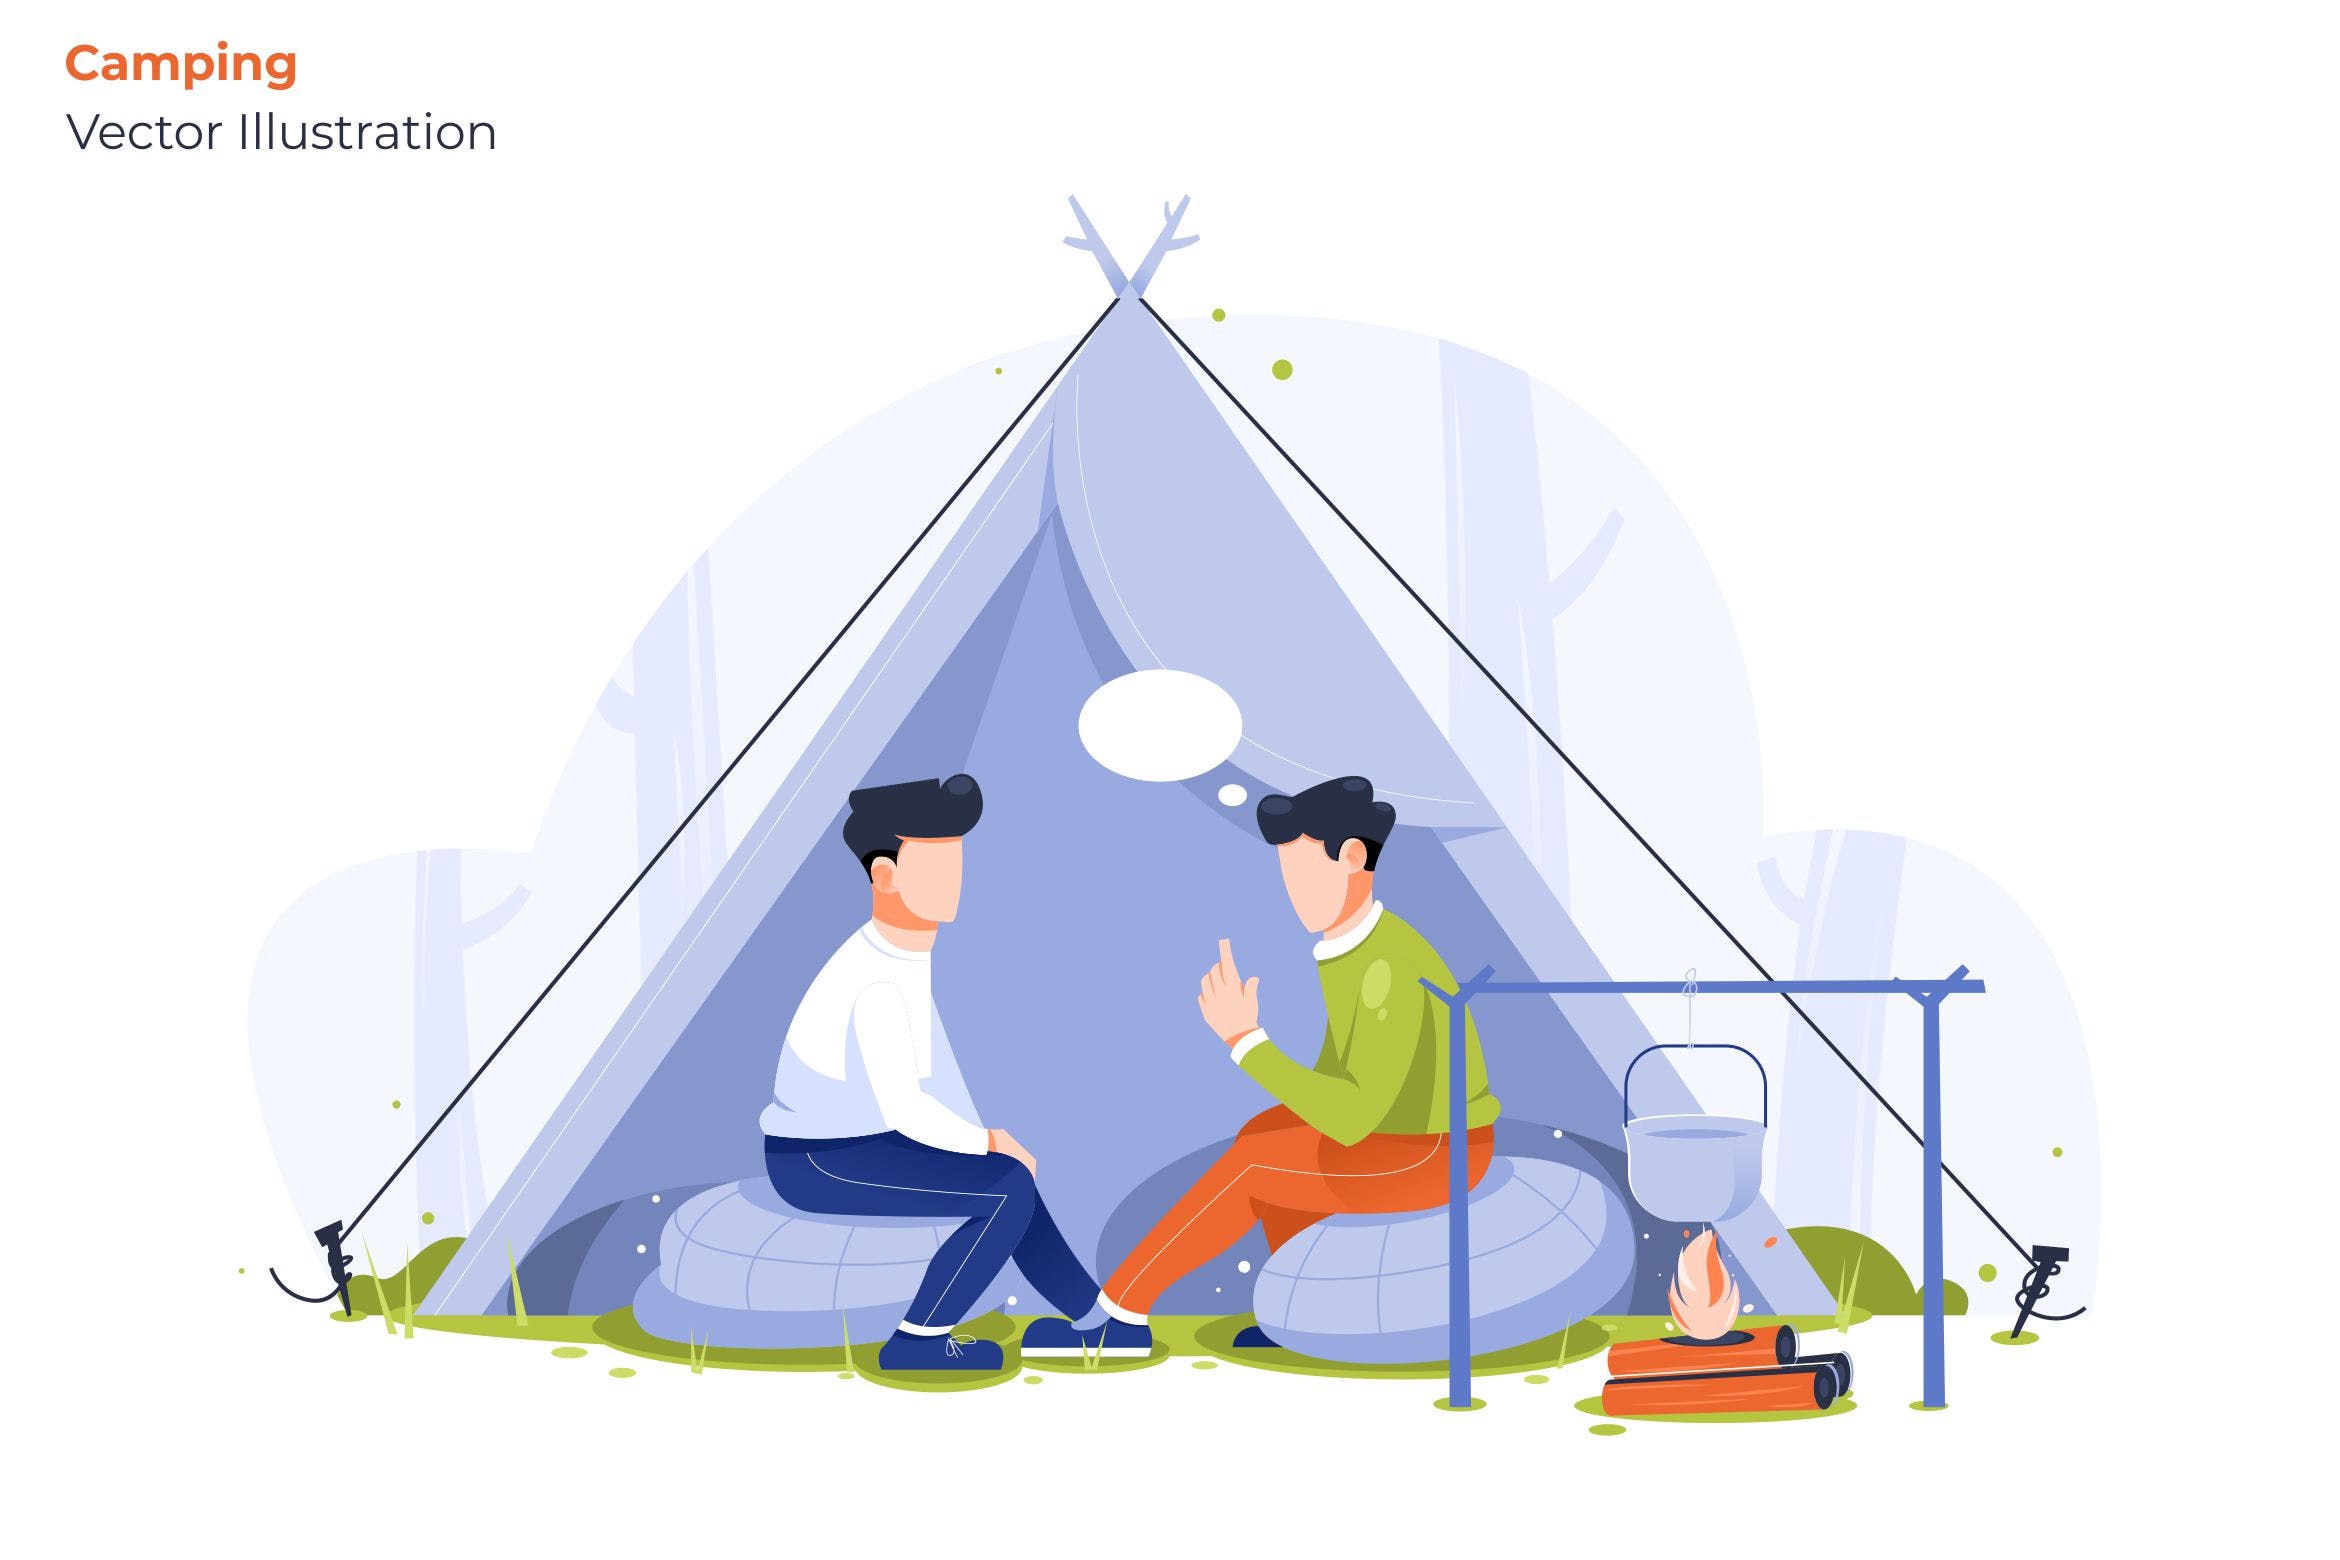 野外露营场景矢量插画第一素材精选素材 Camping – Vector Illustration插图